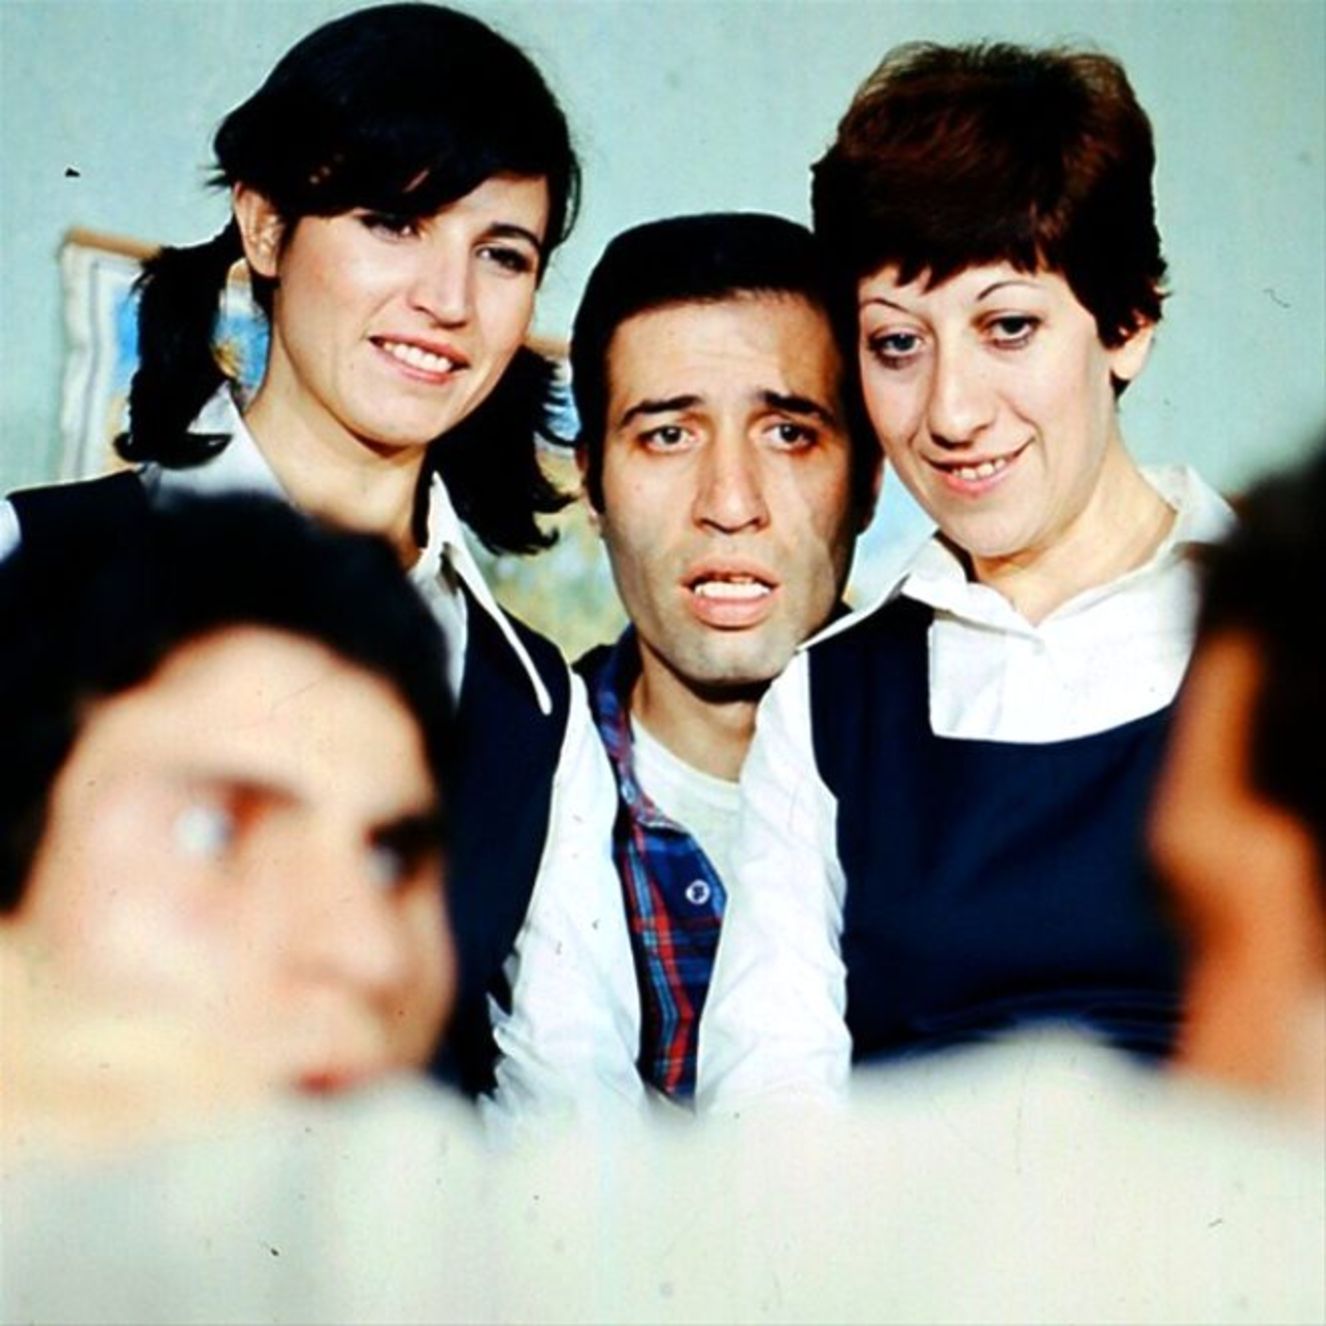 'Hababam Sınııfı Tatilde' (1978)